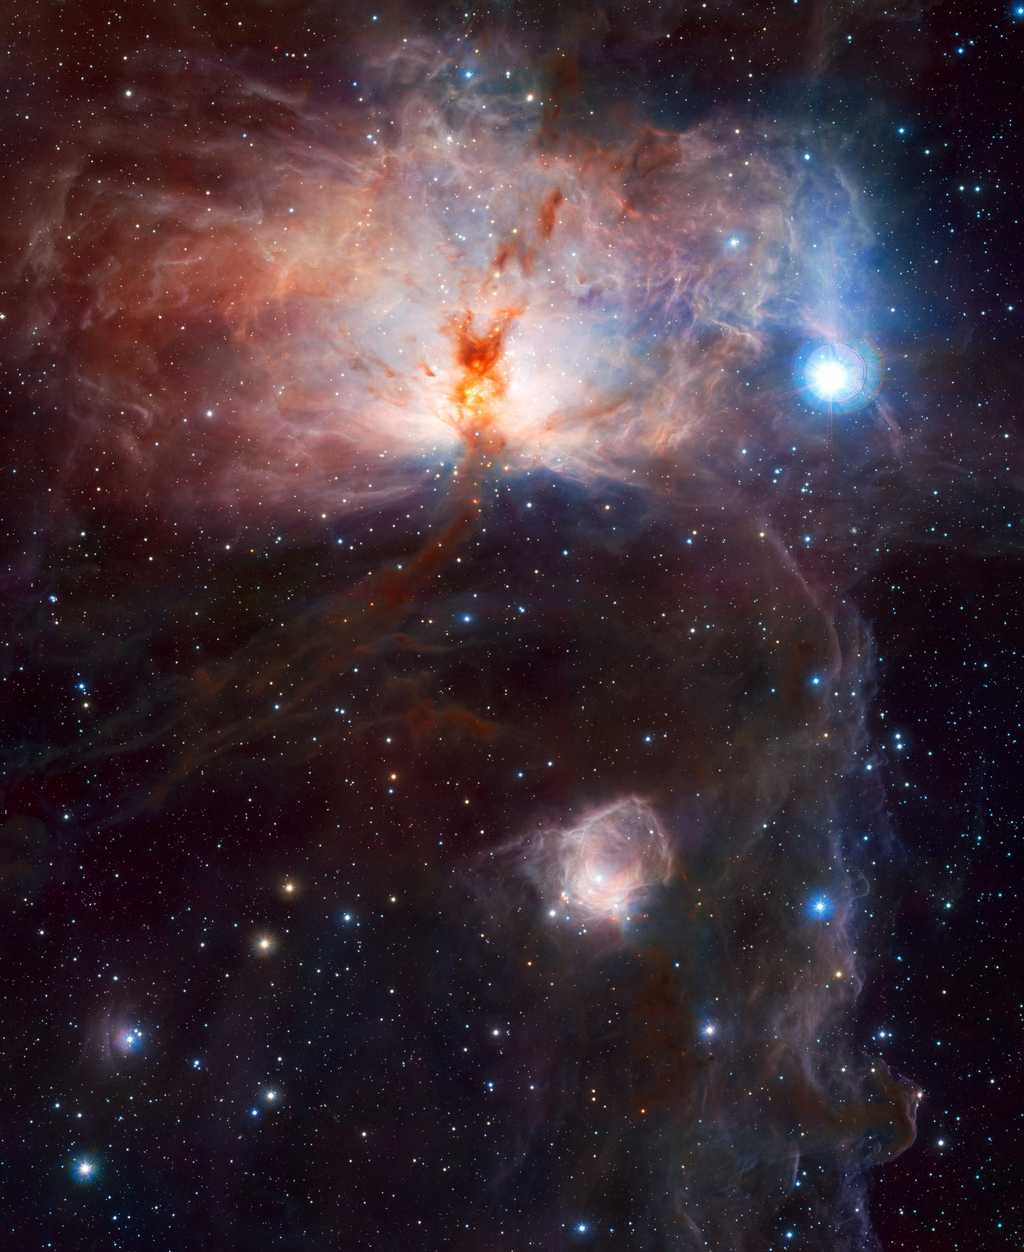 NGC 2024, la nébuleuse de la Flamme, se situe dans la constellation d'Orion. C'est l'un des 100 clichés retenus par l'ESO sur son site internet. © ESO